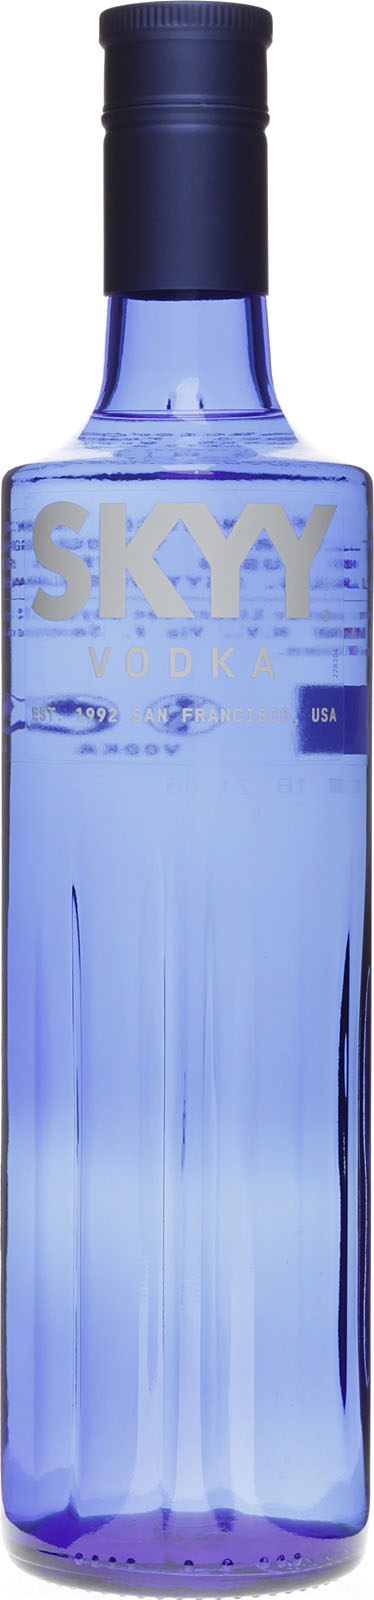 kaufen bei Skyy günstig Vodka Blue online